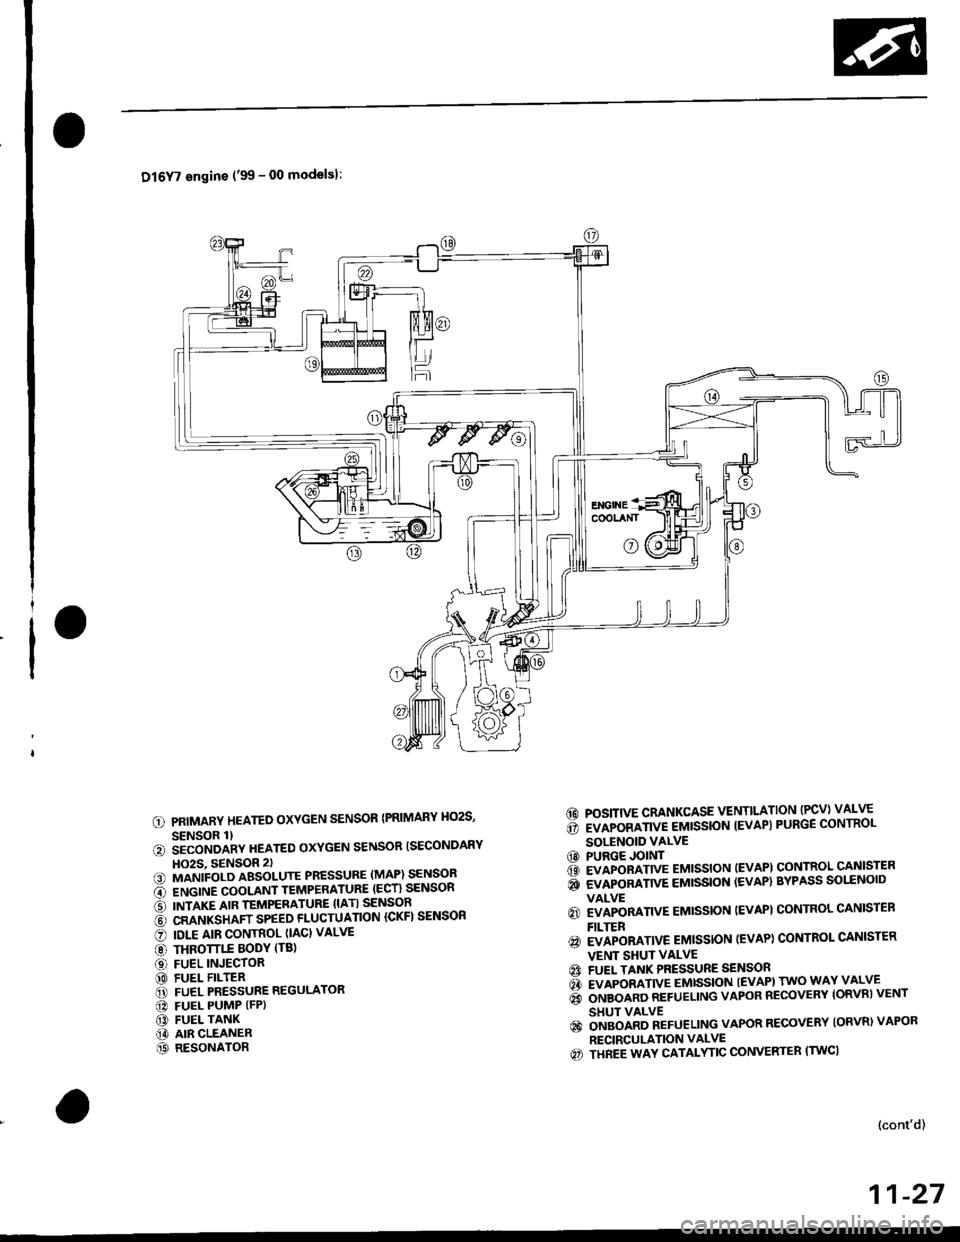 HONDA CIVIC 1996 6.G User Guide Dl6Y7 engins (99 - 00 modelsl:
PRIMARY HEATED OXYGEN SENSOR {PRIMARY HO2S,
SENSOR 1)iiconoanv neareo oxYGEN sENsoR ISECoNDARY
HO2S, 9ENSOR 2)MANIFOLD ABSOLUTE PRESSURE (MAP) SENSOR
ENGINE COOLANT TEM